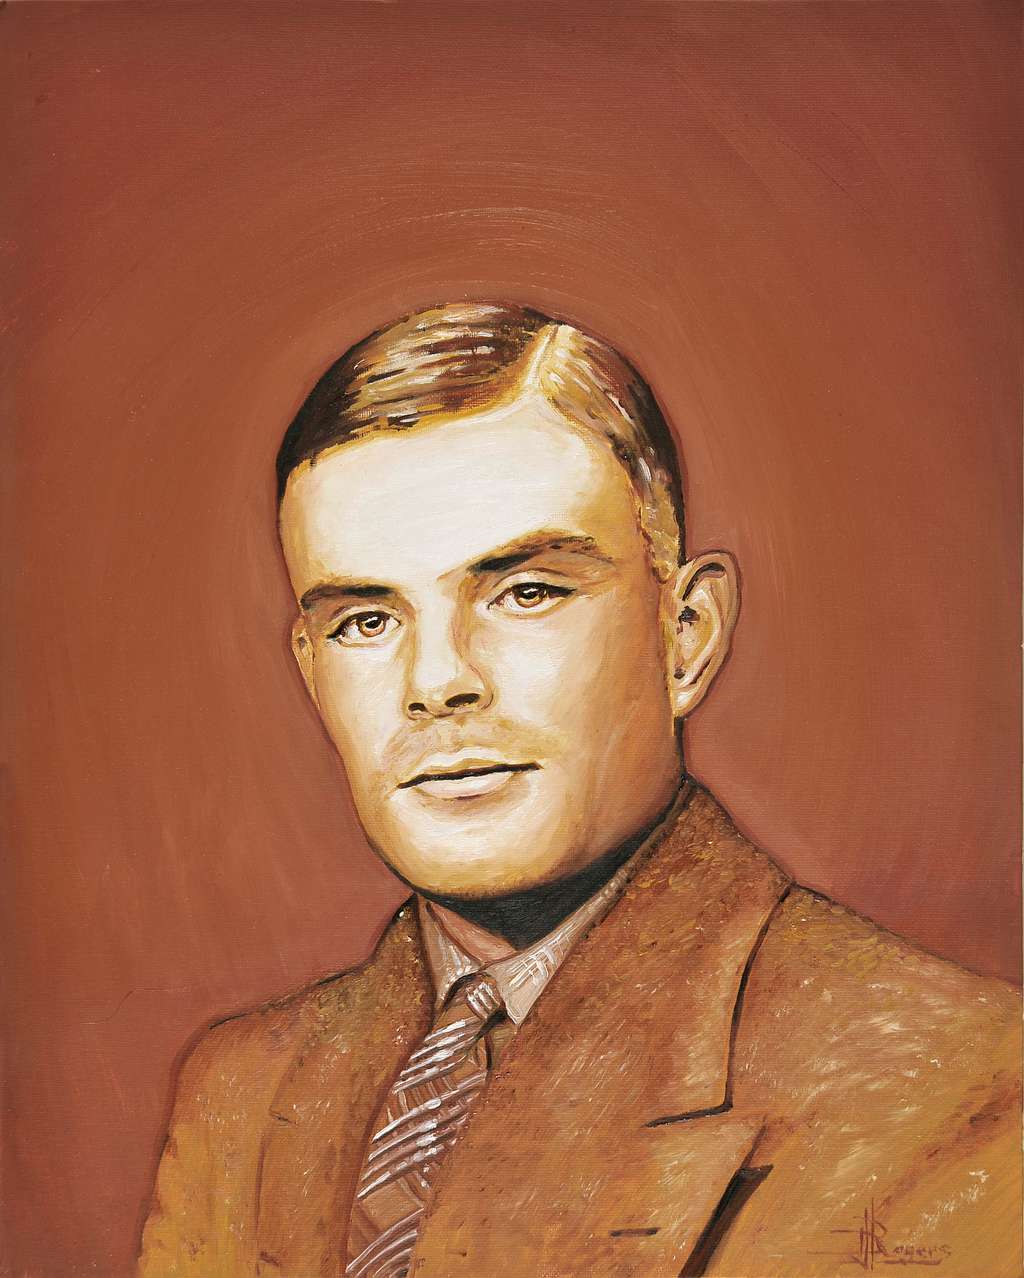 Alan Turing, à qui l'on doit notamment le test et la machine qui portent son nom, est l'un des pères de l'informatique. Depuis, de grands progrès ont été effectués en direction d'une électronique plus performante pour réaliser des ordinateurs dont la puissance de calcul finira par atteindre celle, supposée, du cerveau humain. © Daniel Rogers